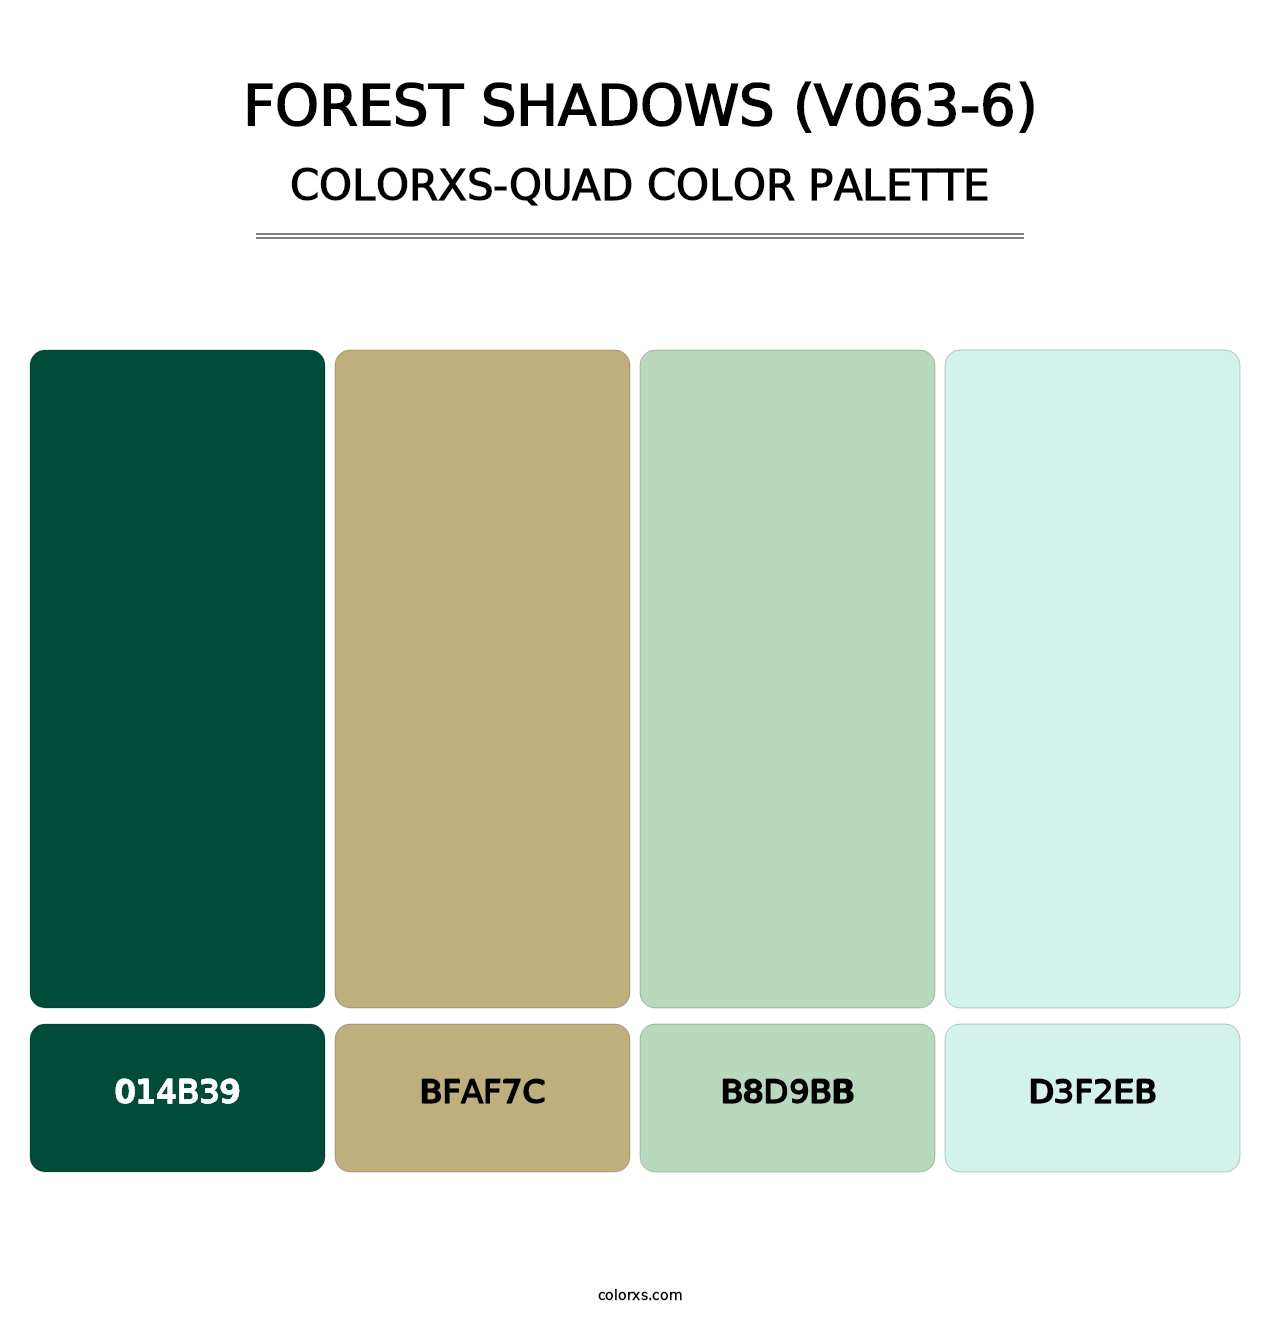 Forest Shadows (V063-6) - Colorxs Quad Palette